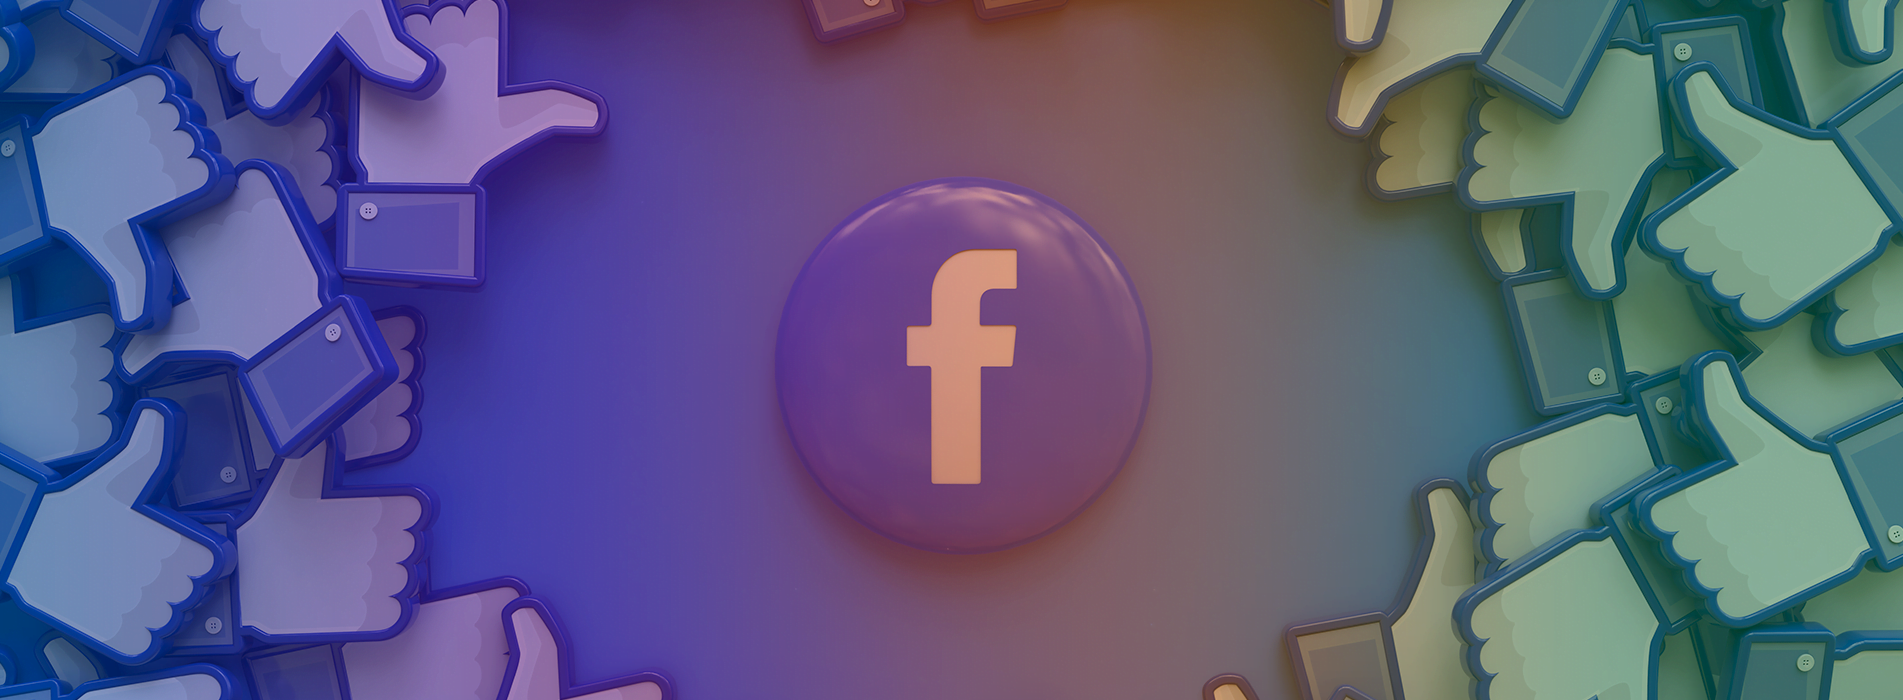 O que podemos aprender com a trajetória do Facebook?